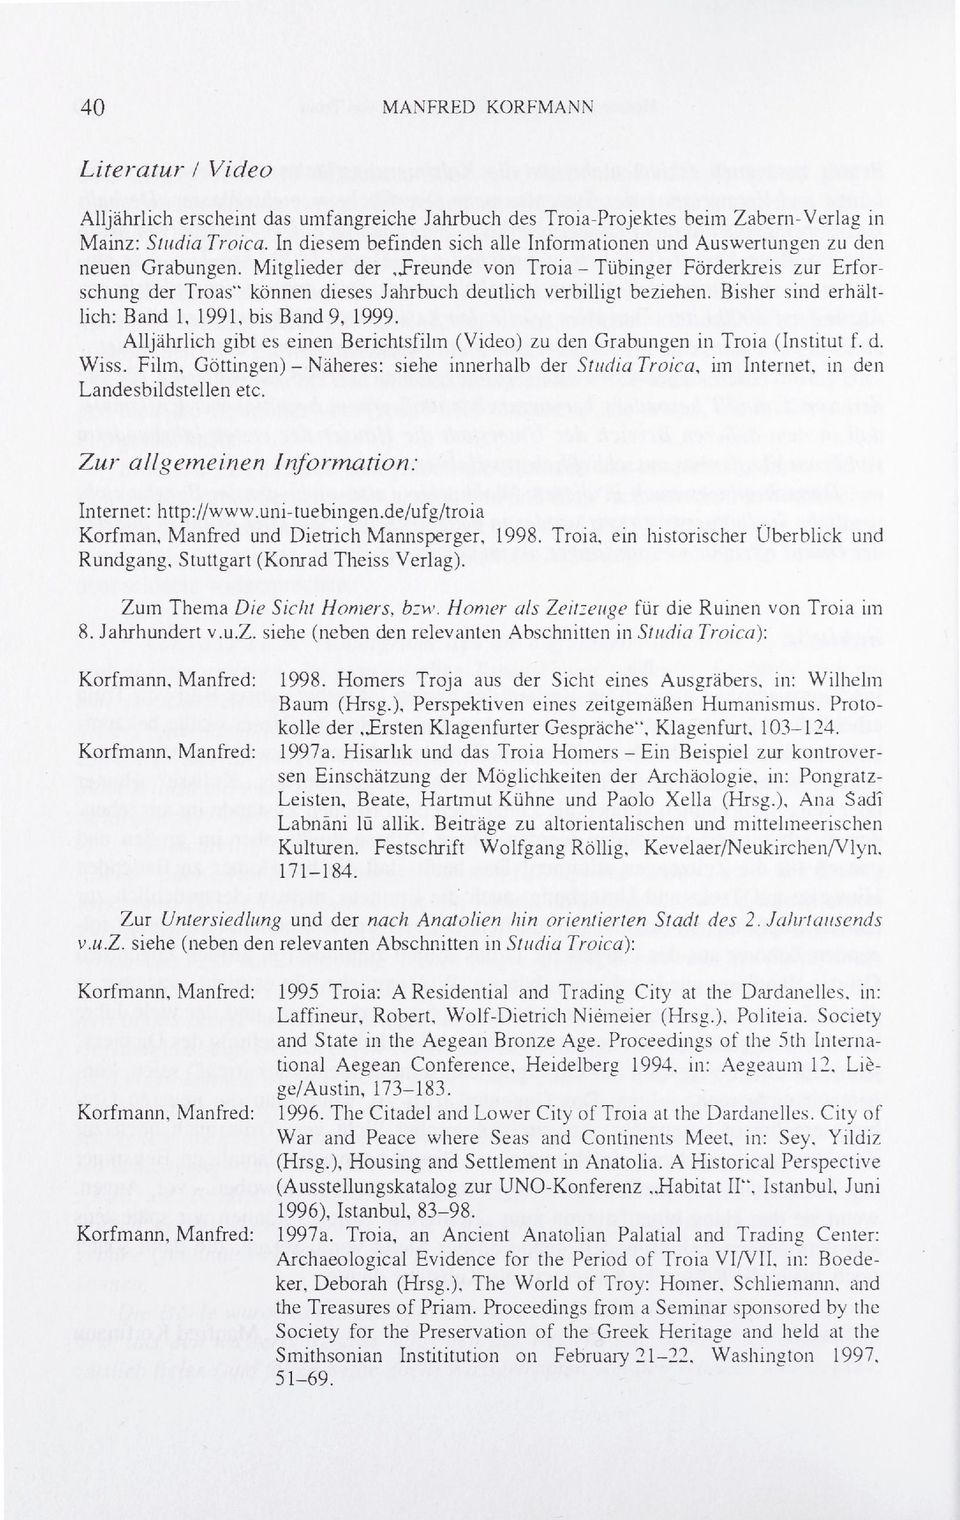 preunde von Troia - Tübinger Förderkreis zur Erfor schung der Troas können dieses Jahrbuch deutlich verbilligt beziehen. Bisher sind erhält lich: Band 1, 1991, bis Band 9, 1999.